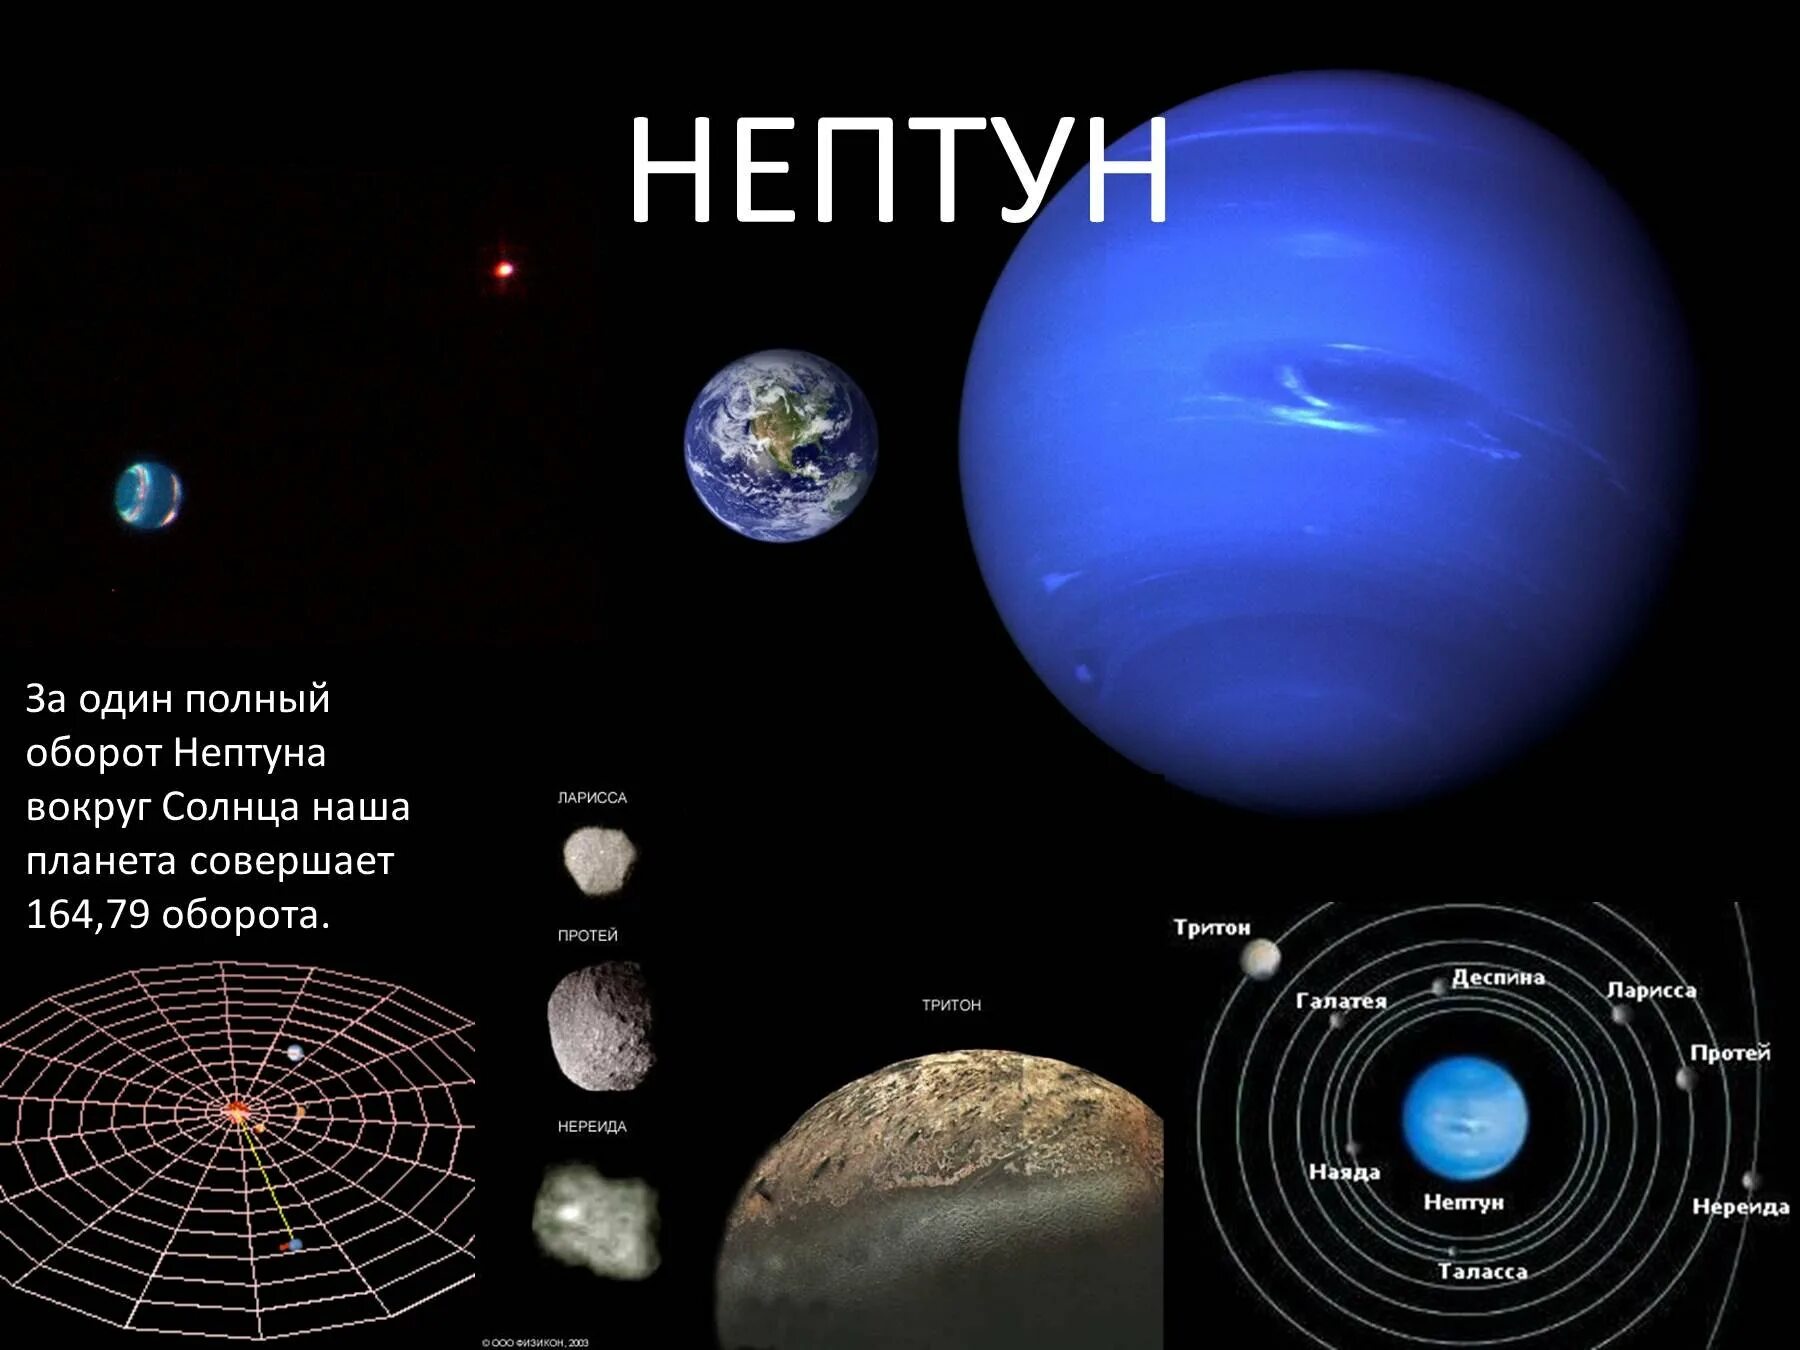 Период обращения нептуна вокруг. Орбита Нептуна вокруг солнца. Нептун. Нептун оборот вокруг солнца. Вращение Нептуна вокруг солнца.